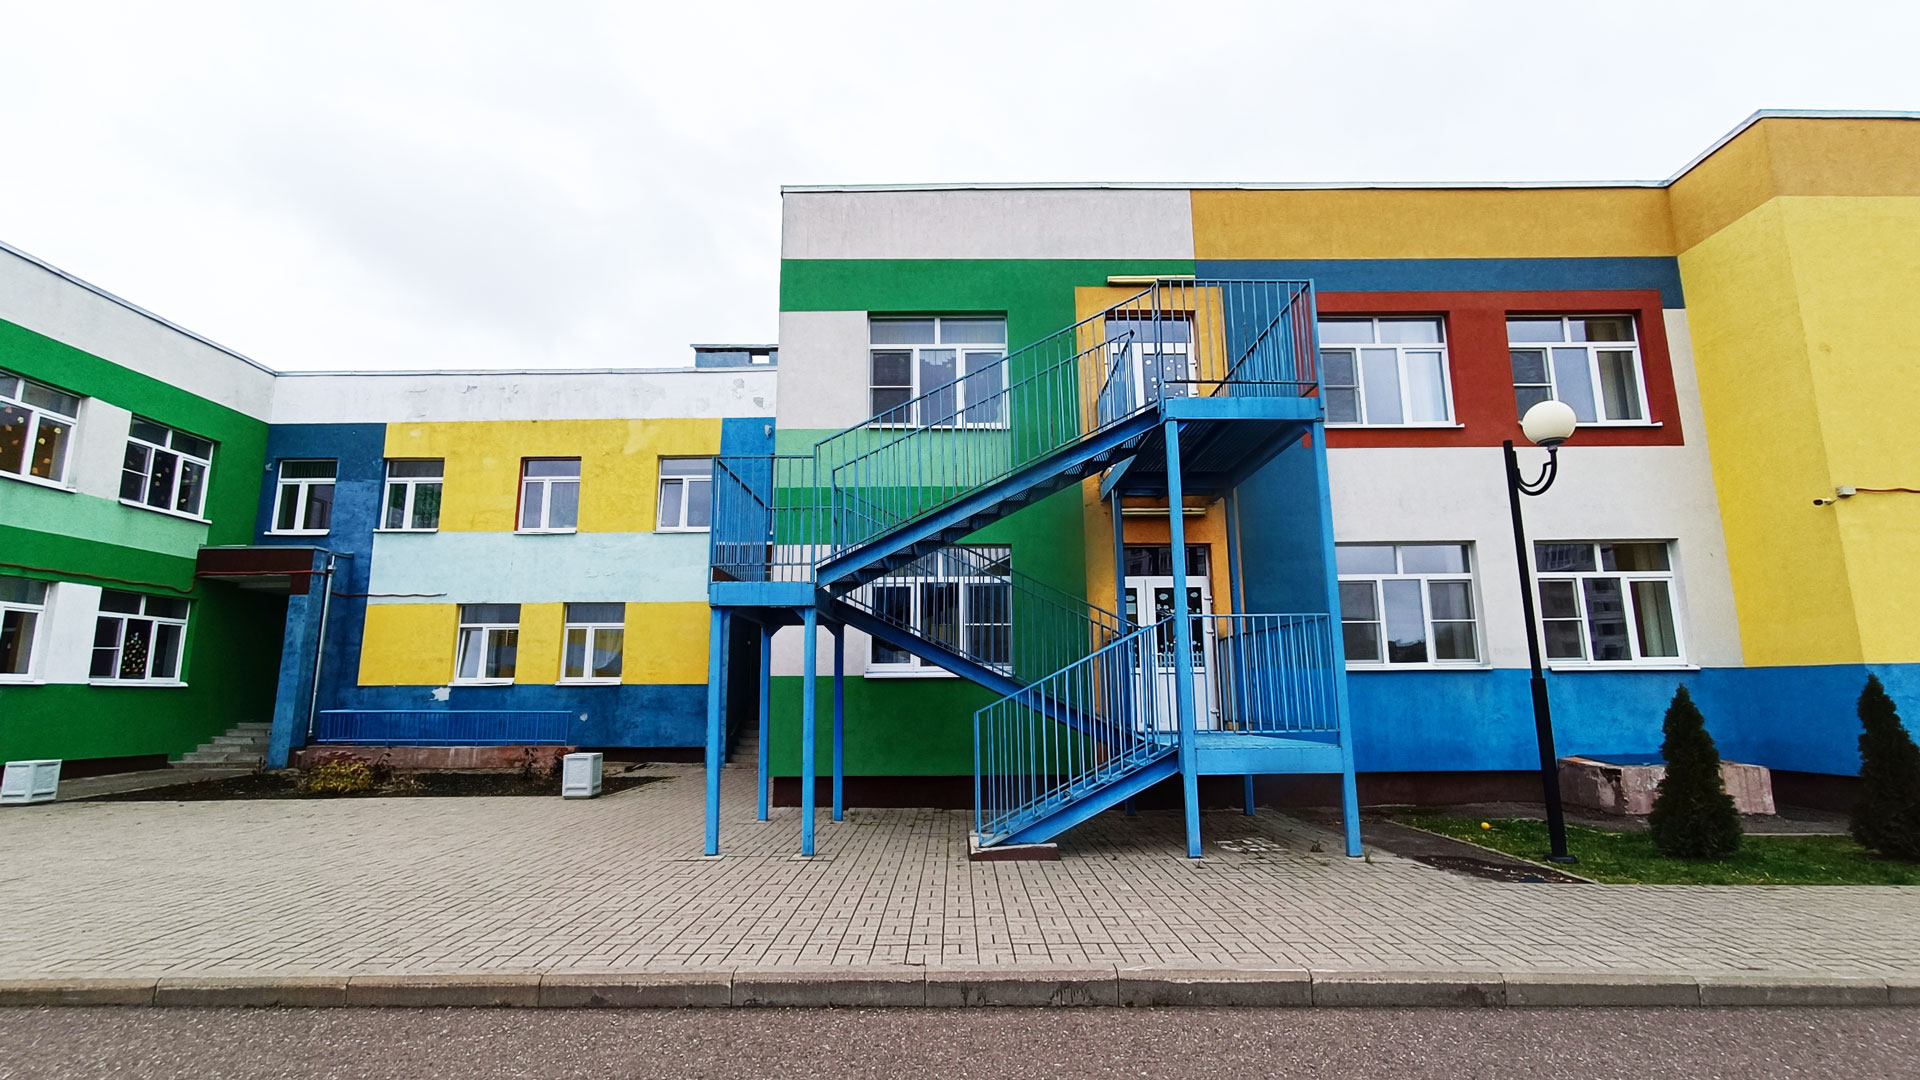 Детский сад 150 Ярославль: общий вид здания.